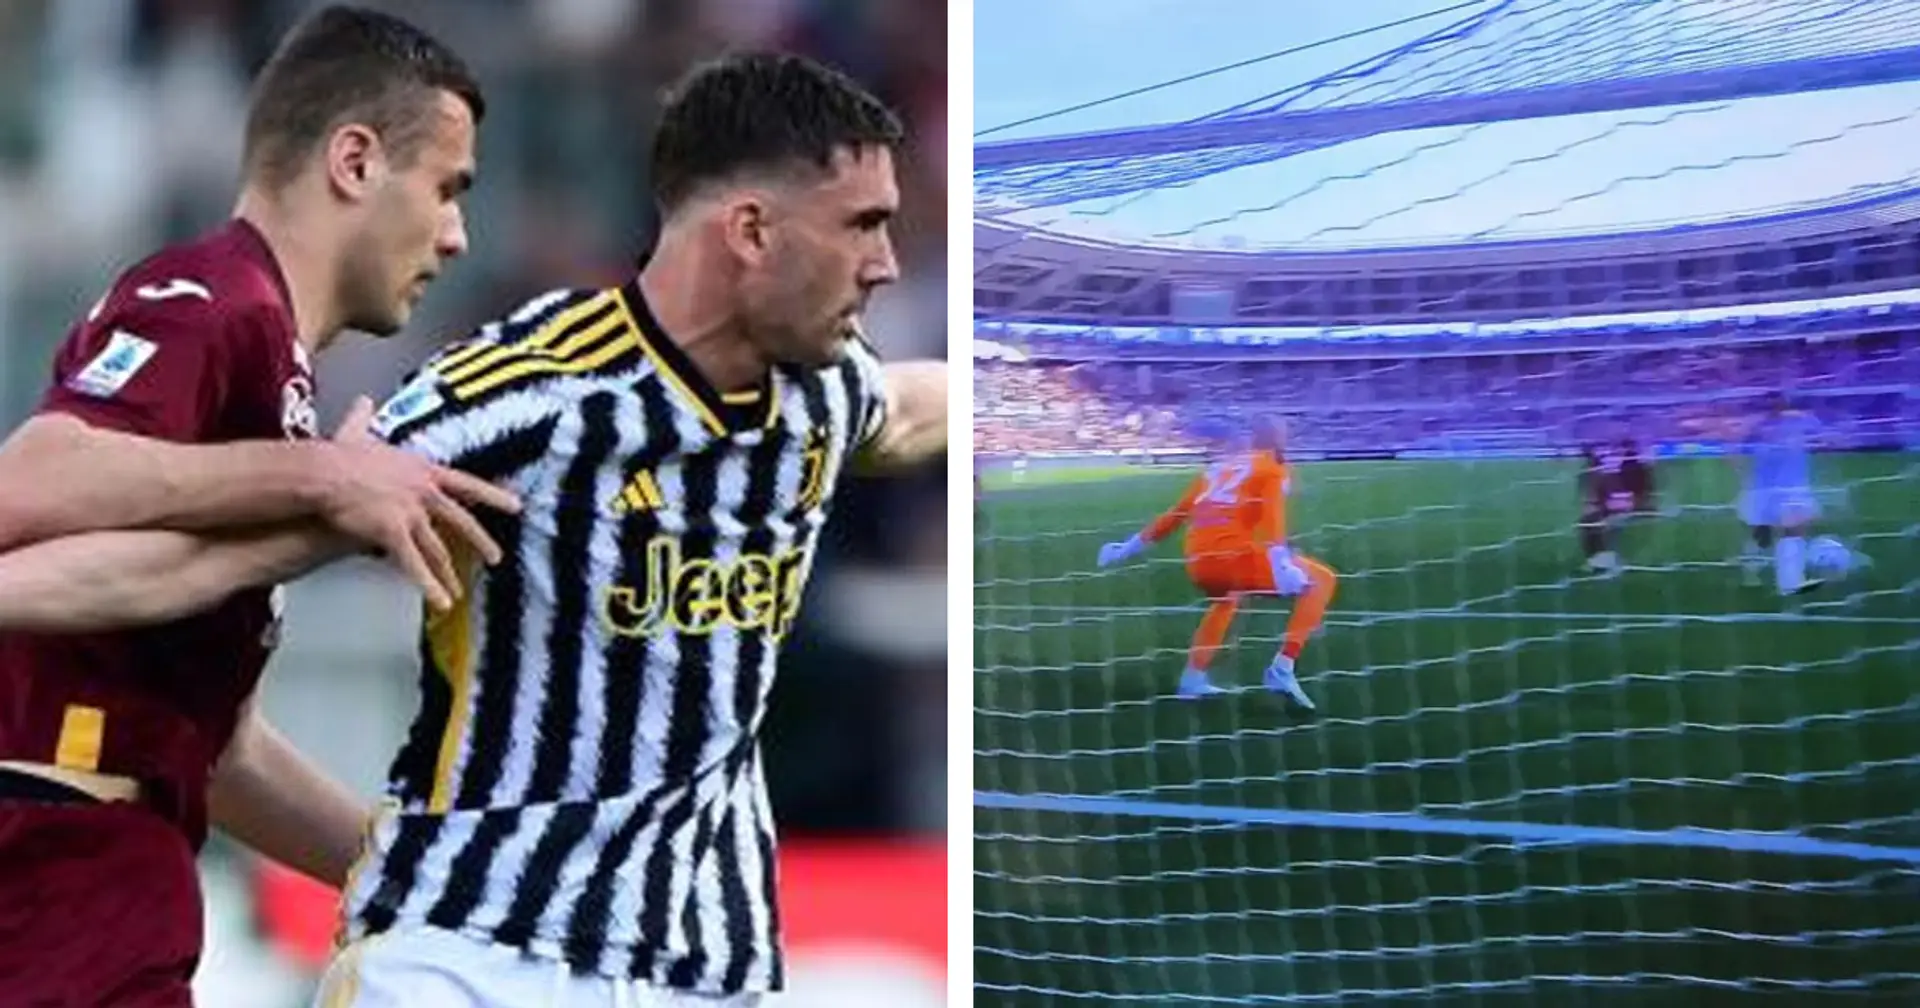 Uno è da 4,5, quasi nessuno brilla: le pagelle dei giocatori della Juventus dopo i primi 45' contro il Torino